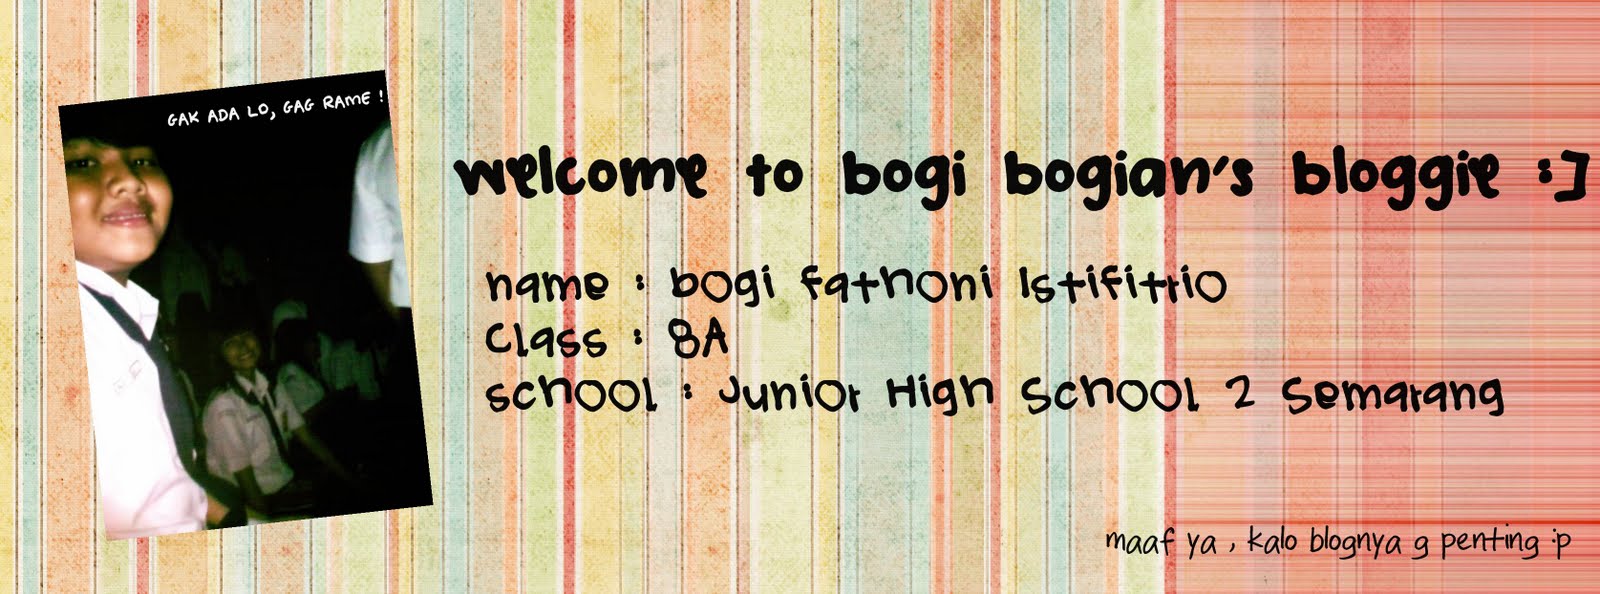 bogibogian's bloggie